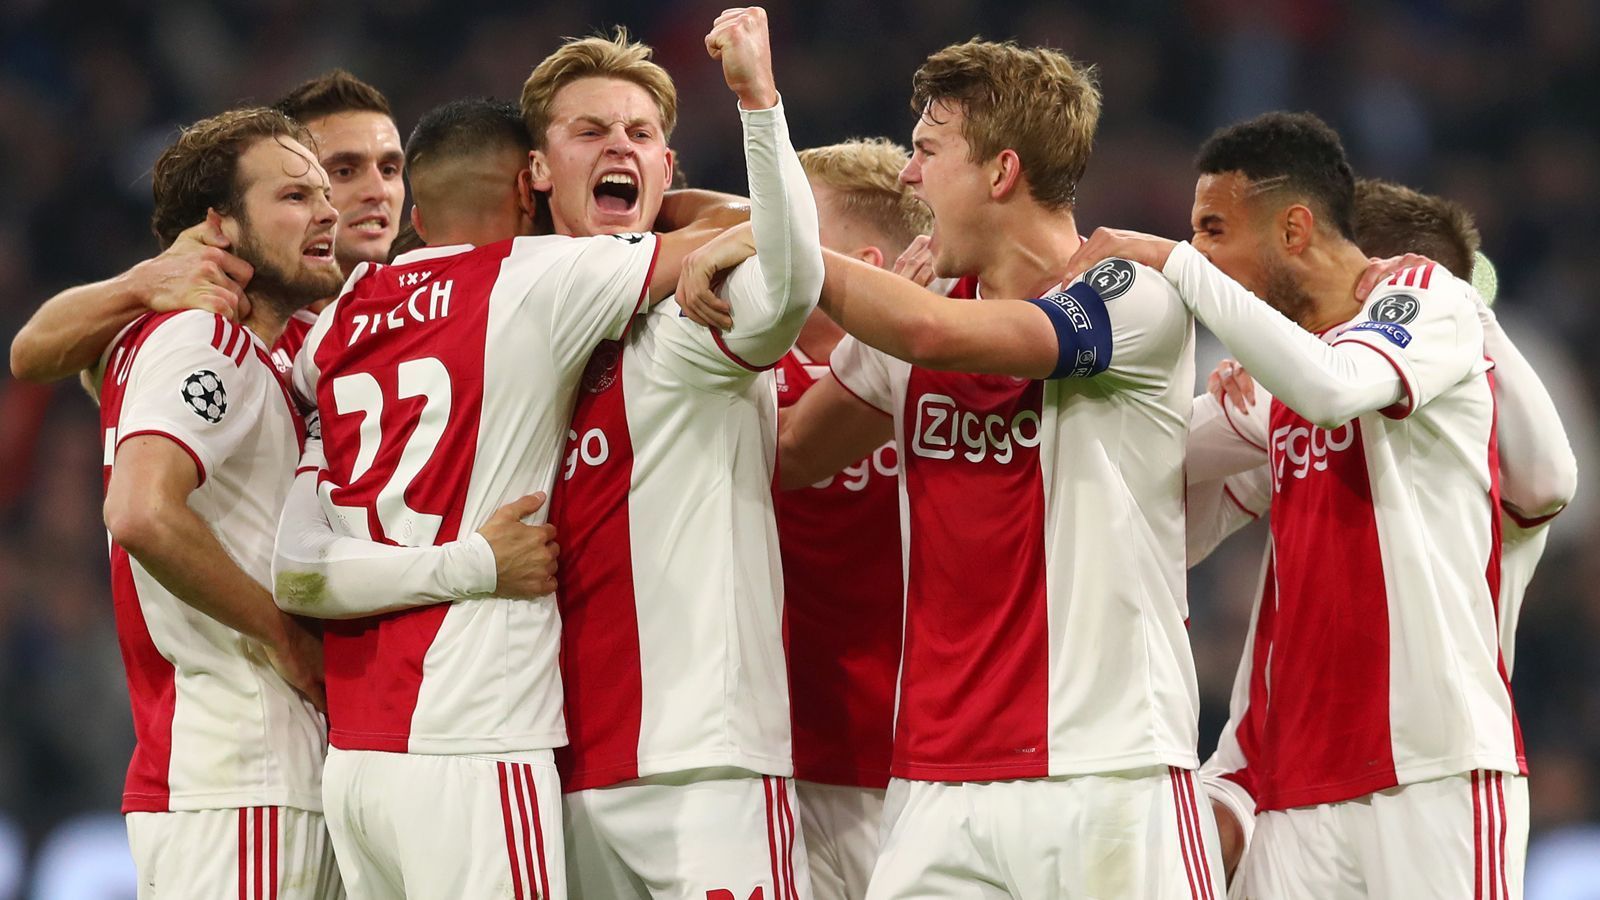 
                <strong>Platz 8 - Ajax Amsterdam</strong><br>
                Gehälter: 54,5 Millionen EuroLand: NiederlandeLiga: Eredivisie
              